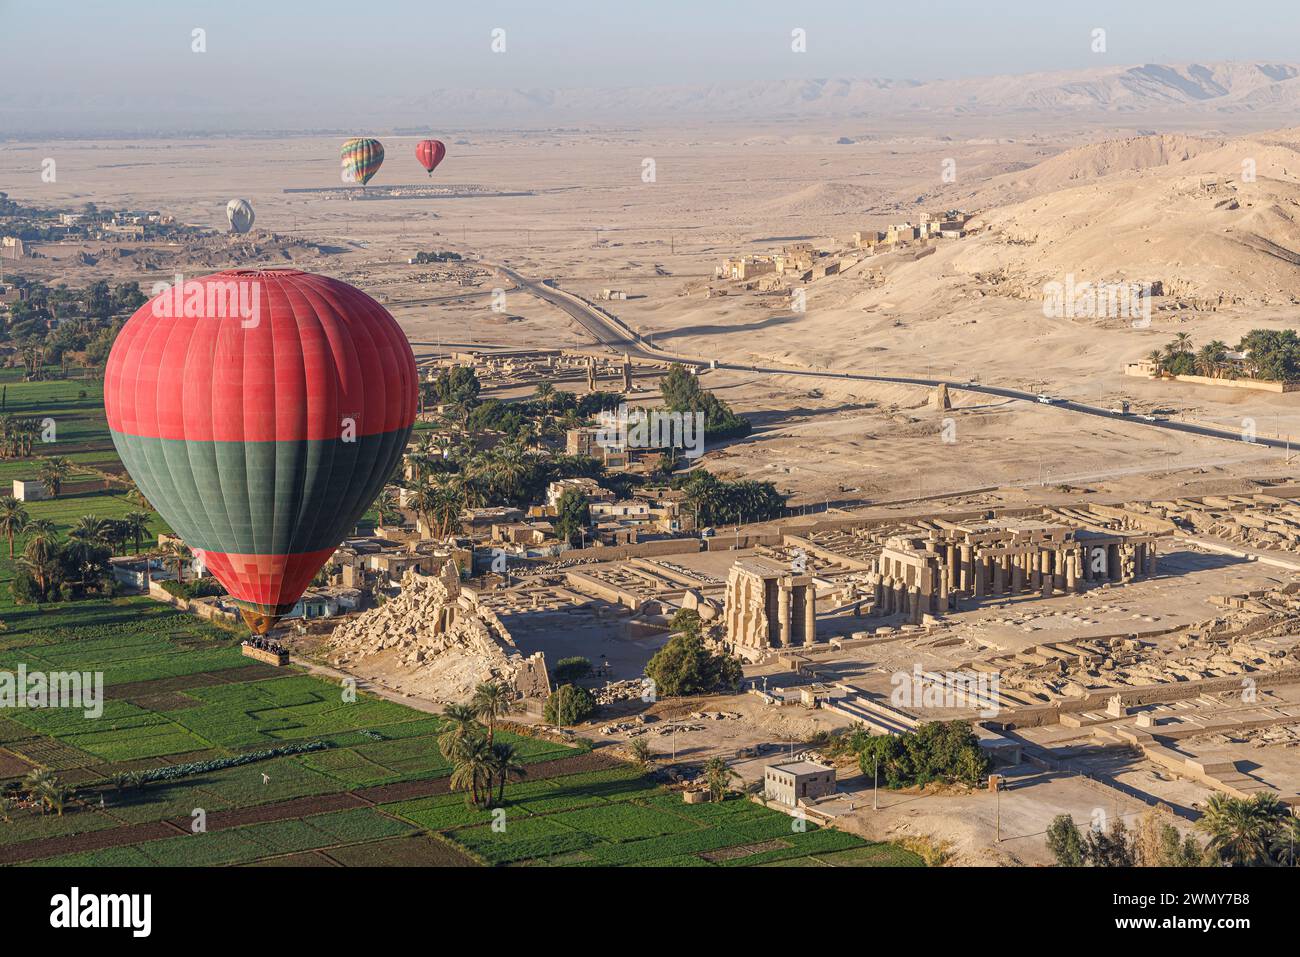 Ägypten, Luxor, das antike Theben mit seiner Nekropole, die von der UNESCO zum Weltkulturerbe erklärt wurde, Heißluftballon über dem Ramasseum Ramesses II Tempel (aus der Vogelperspektive) Stockfoto